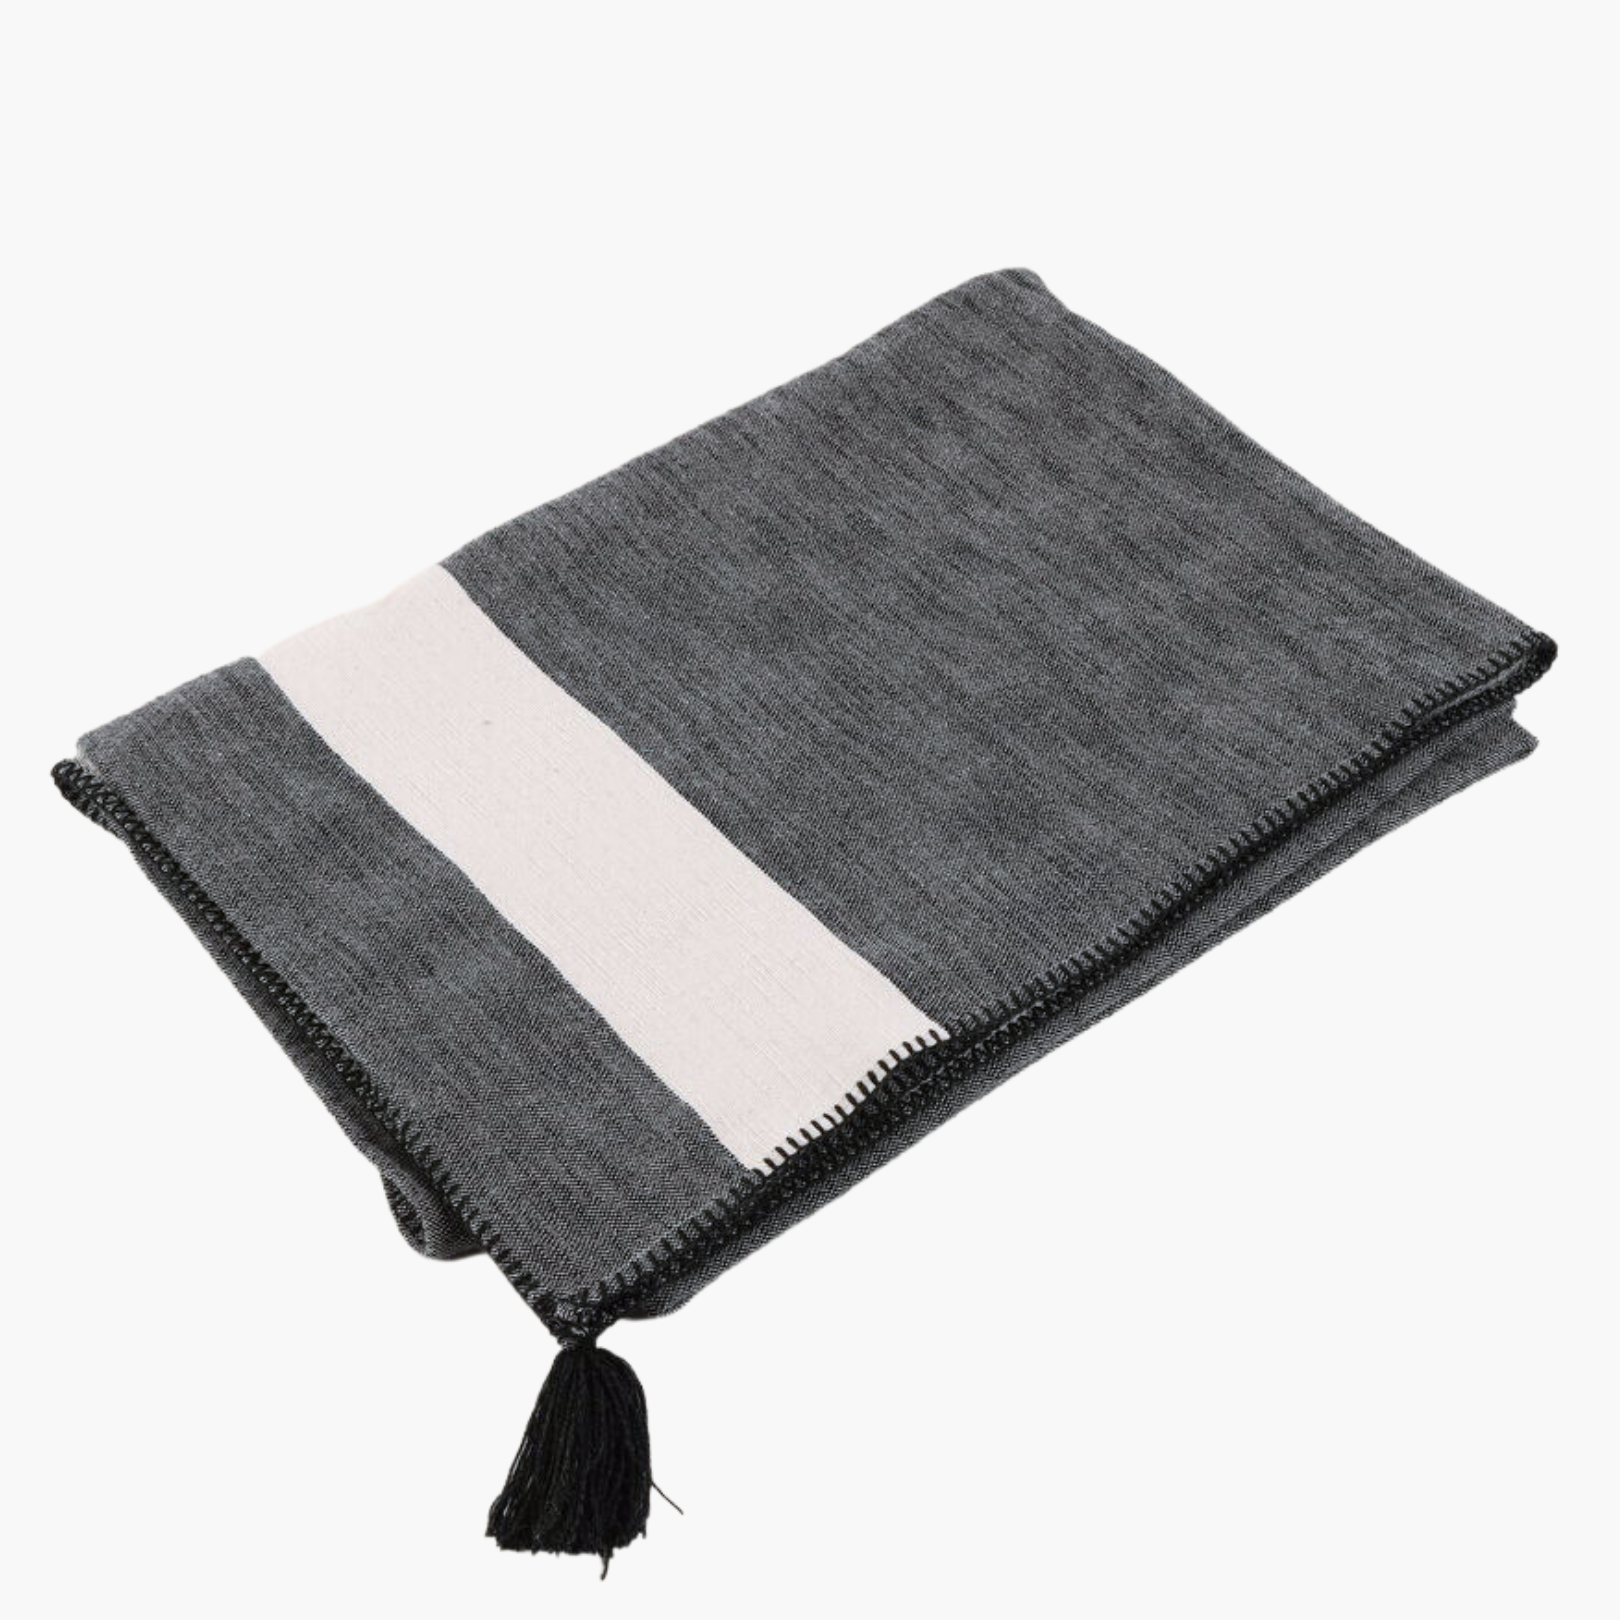 CASABLANCA Blanket 150X240 - Off Black/Off White